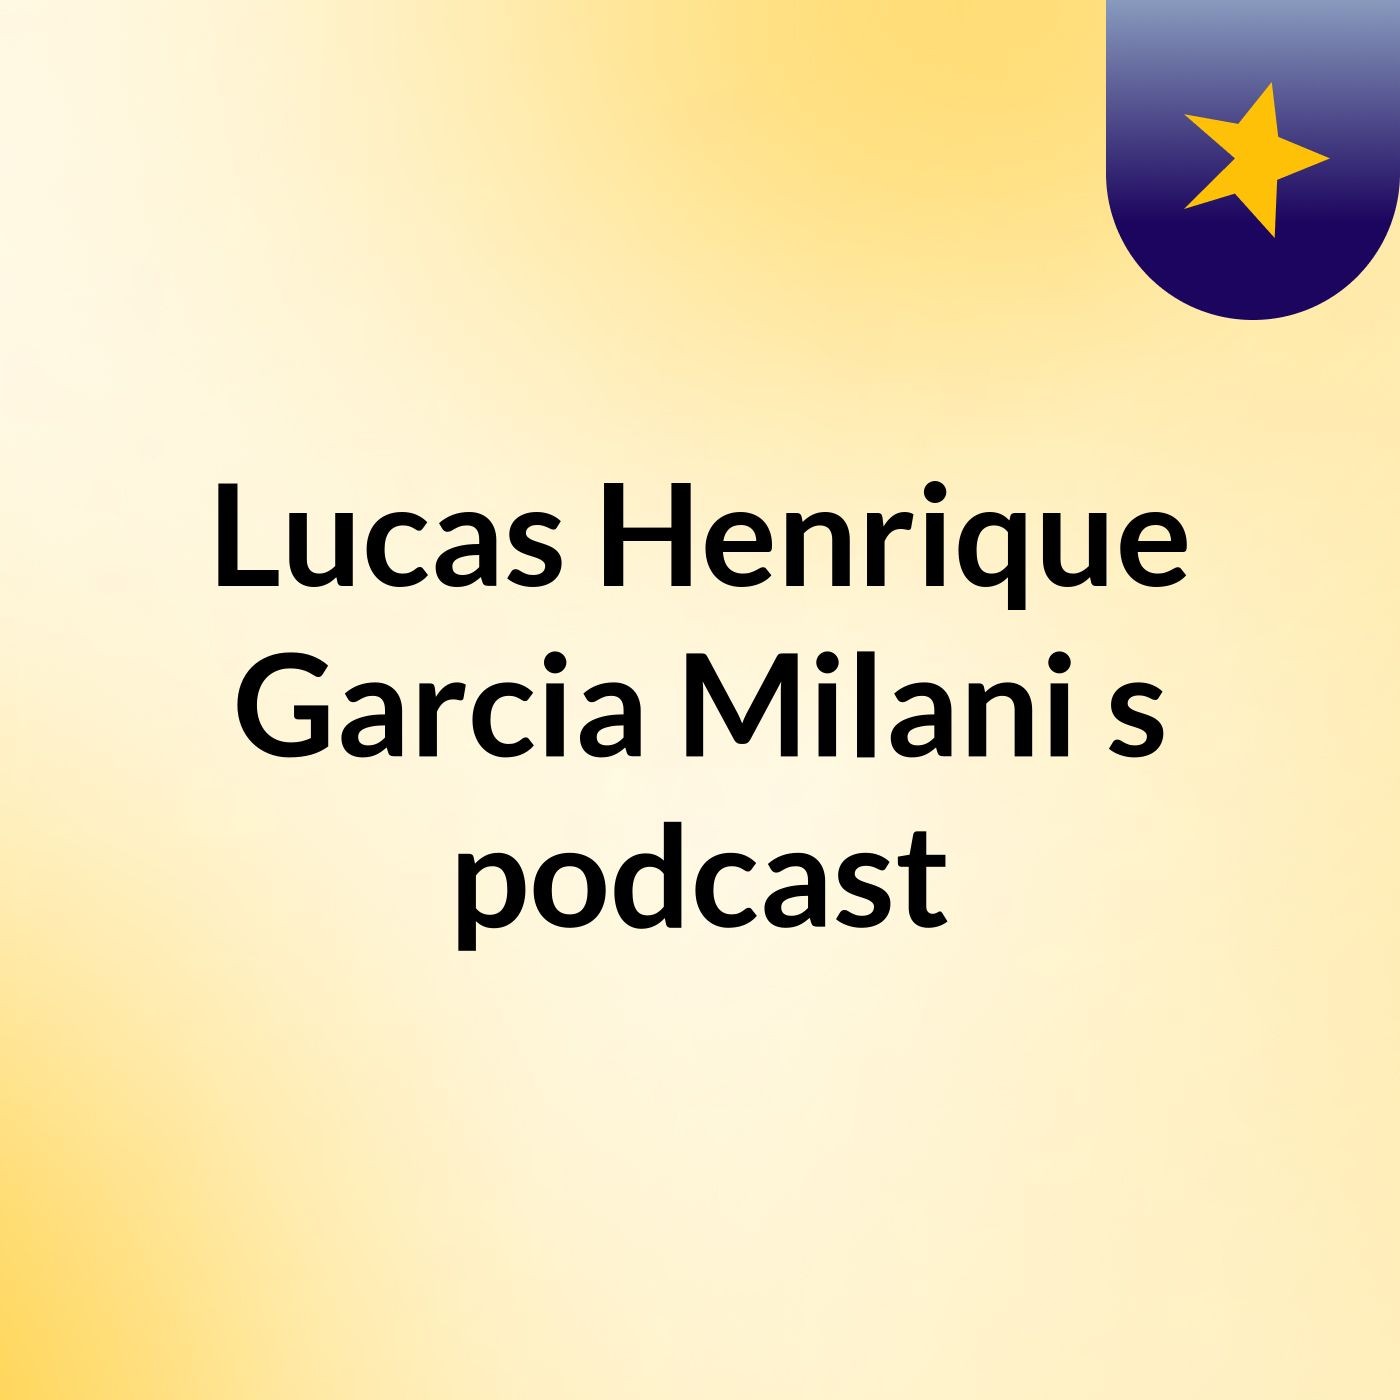 Lucas Henrique Garcia Milani's podcast